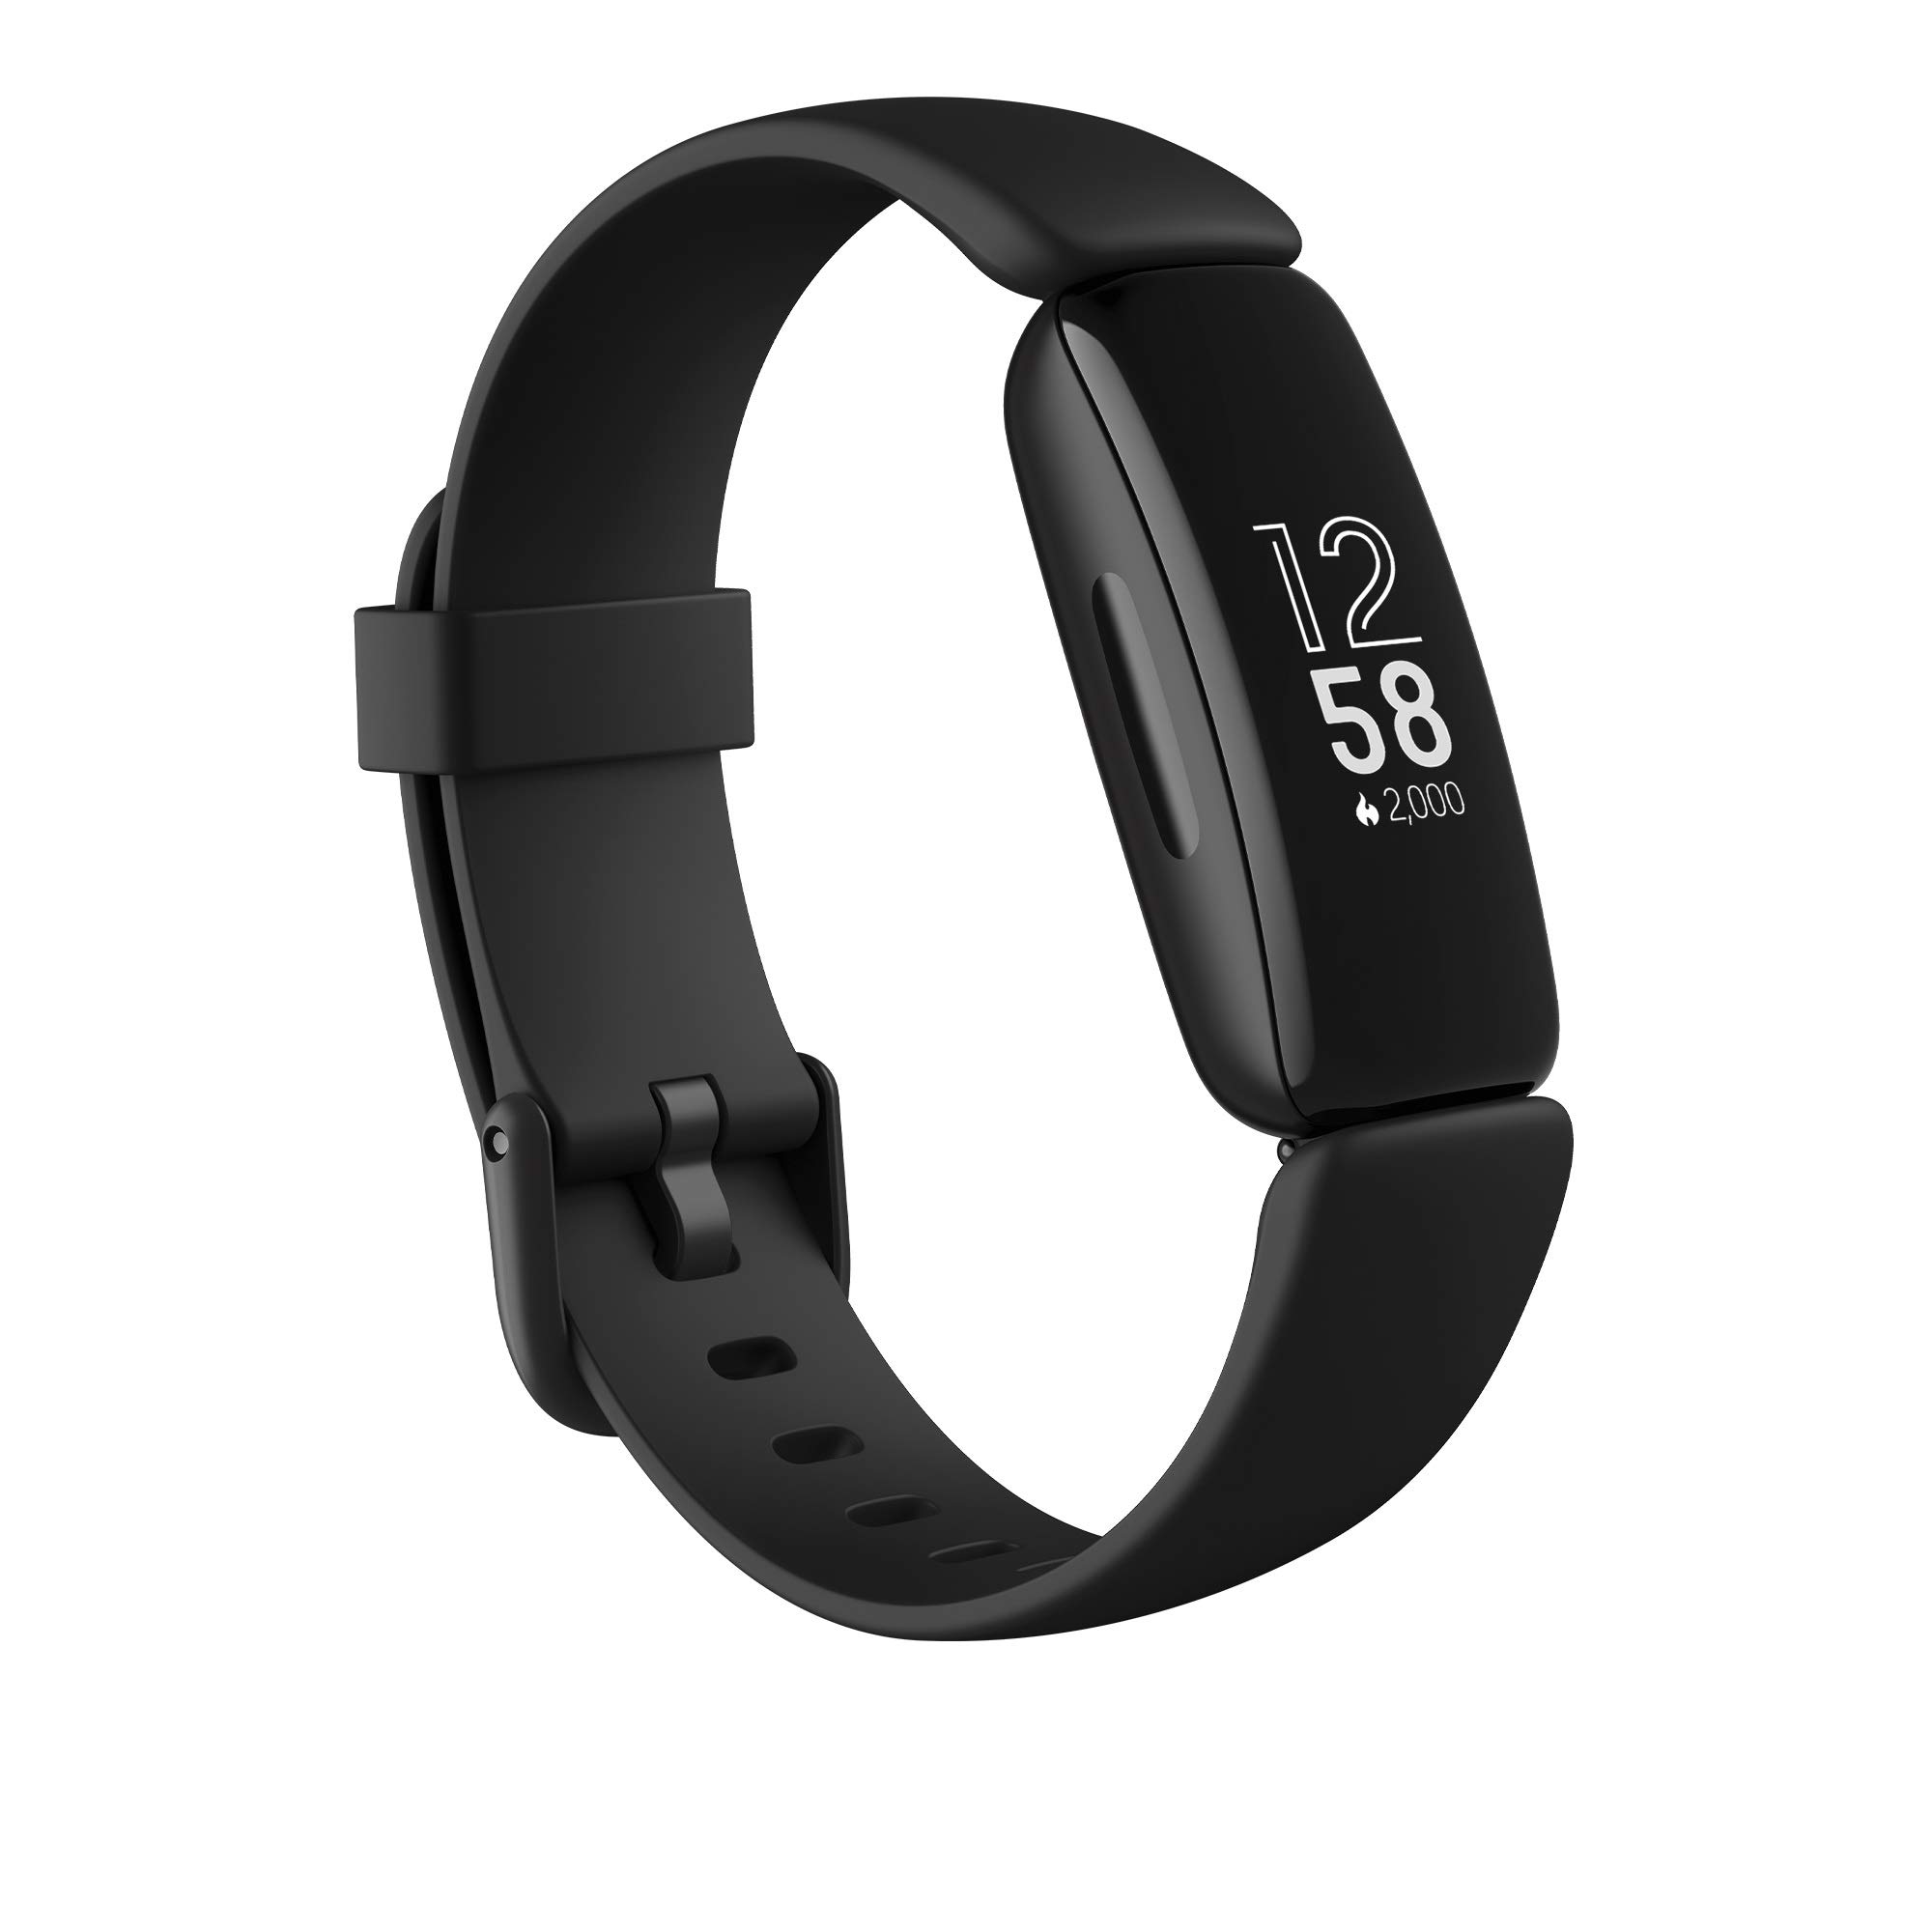 Fitbit Inspire 2 Gesundheits- & Fitness-Tracker mit einer 1-Jahres-Testversion Fitbit Premium, kontinuierlicher Herzfrequenzmessung & bis zu 10 Tagen Akkulaufzeit, Schwarz